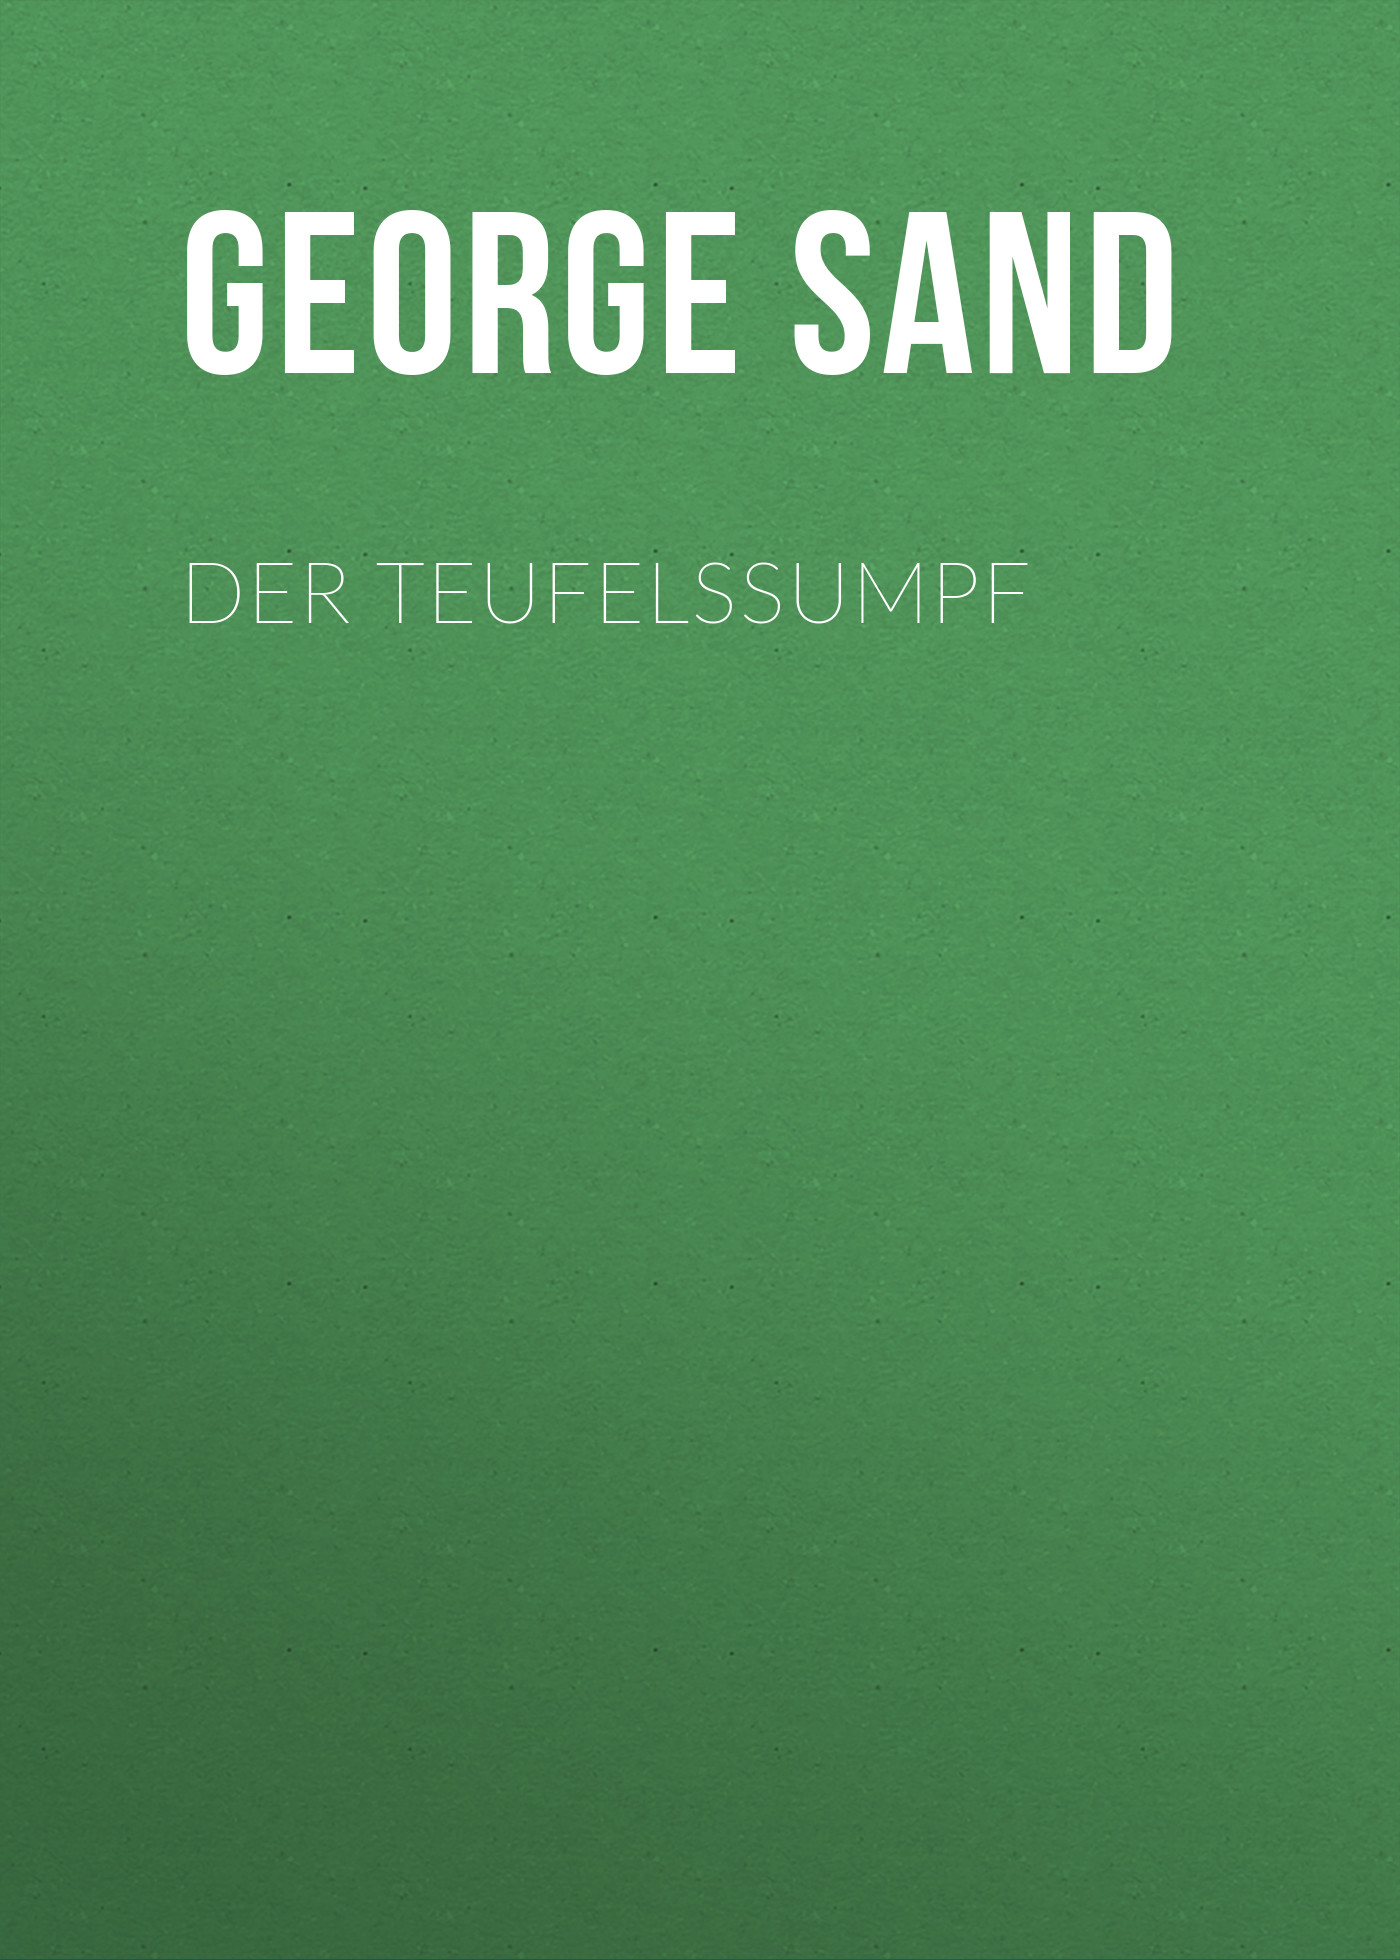 Книга Der Teufelssumpf из серии , созданная George Sand, может относится к жанру Зарубежная классика. Стоимость электронной книги Der Teufelssumpf с идентификатором 48633332 составляет 0 руб.